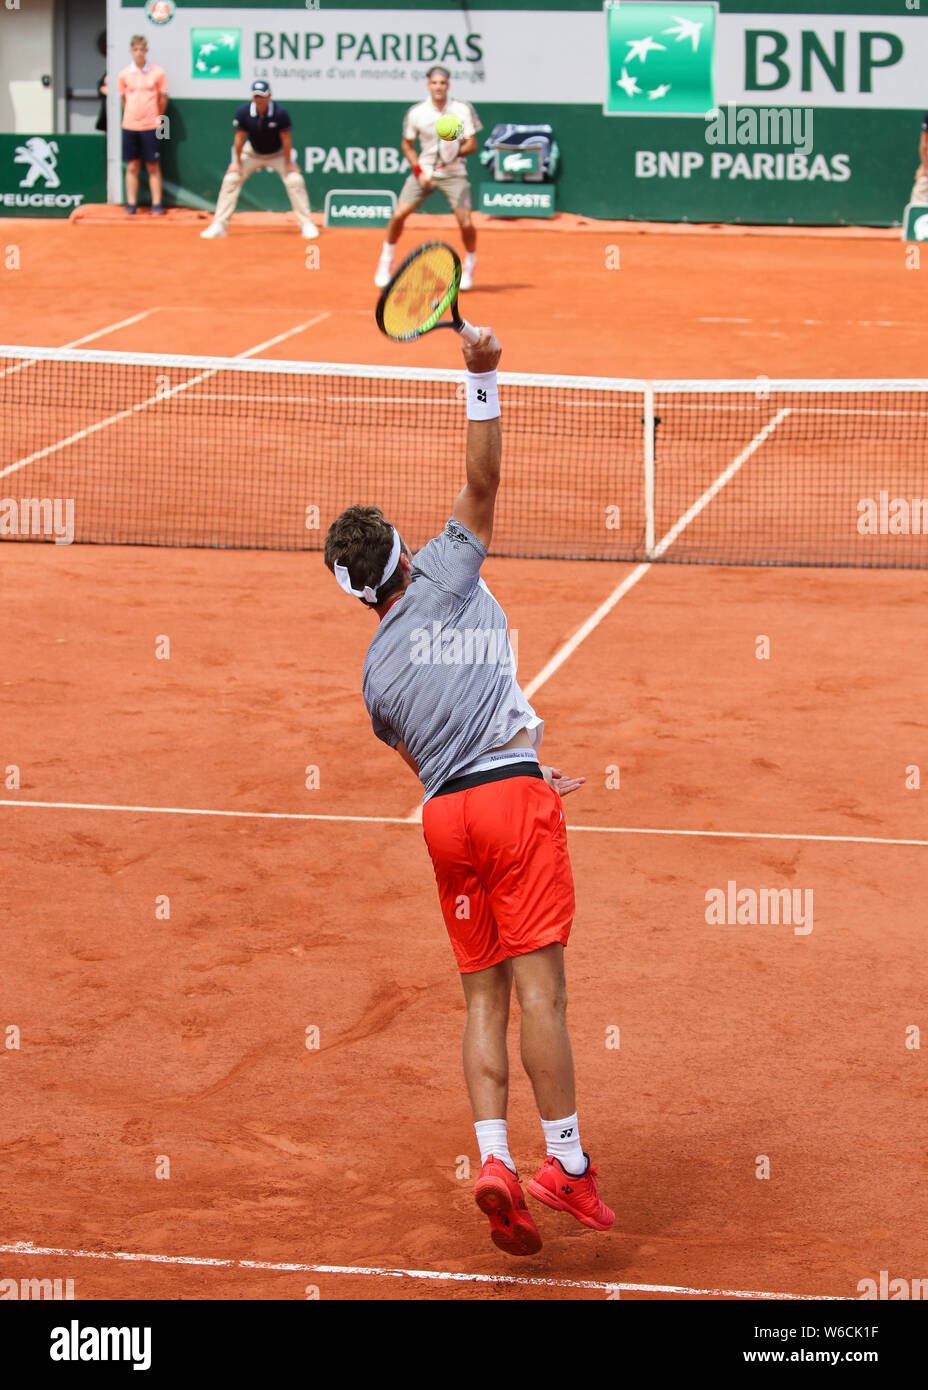 Norwegische tennis player Casper Ruud spielen ein service Schuß zu Roger Federer bei den French Open 2019, Paris, Frankreich Stockfoto